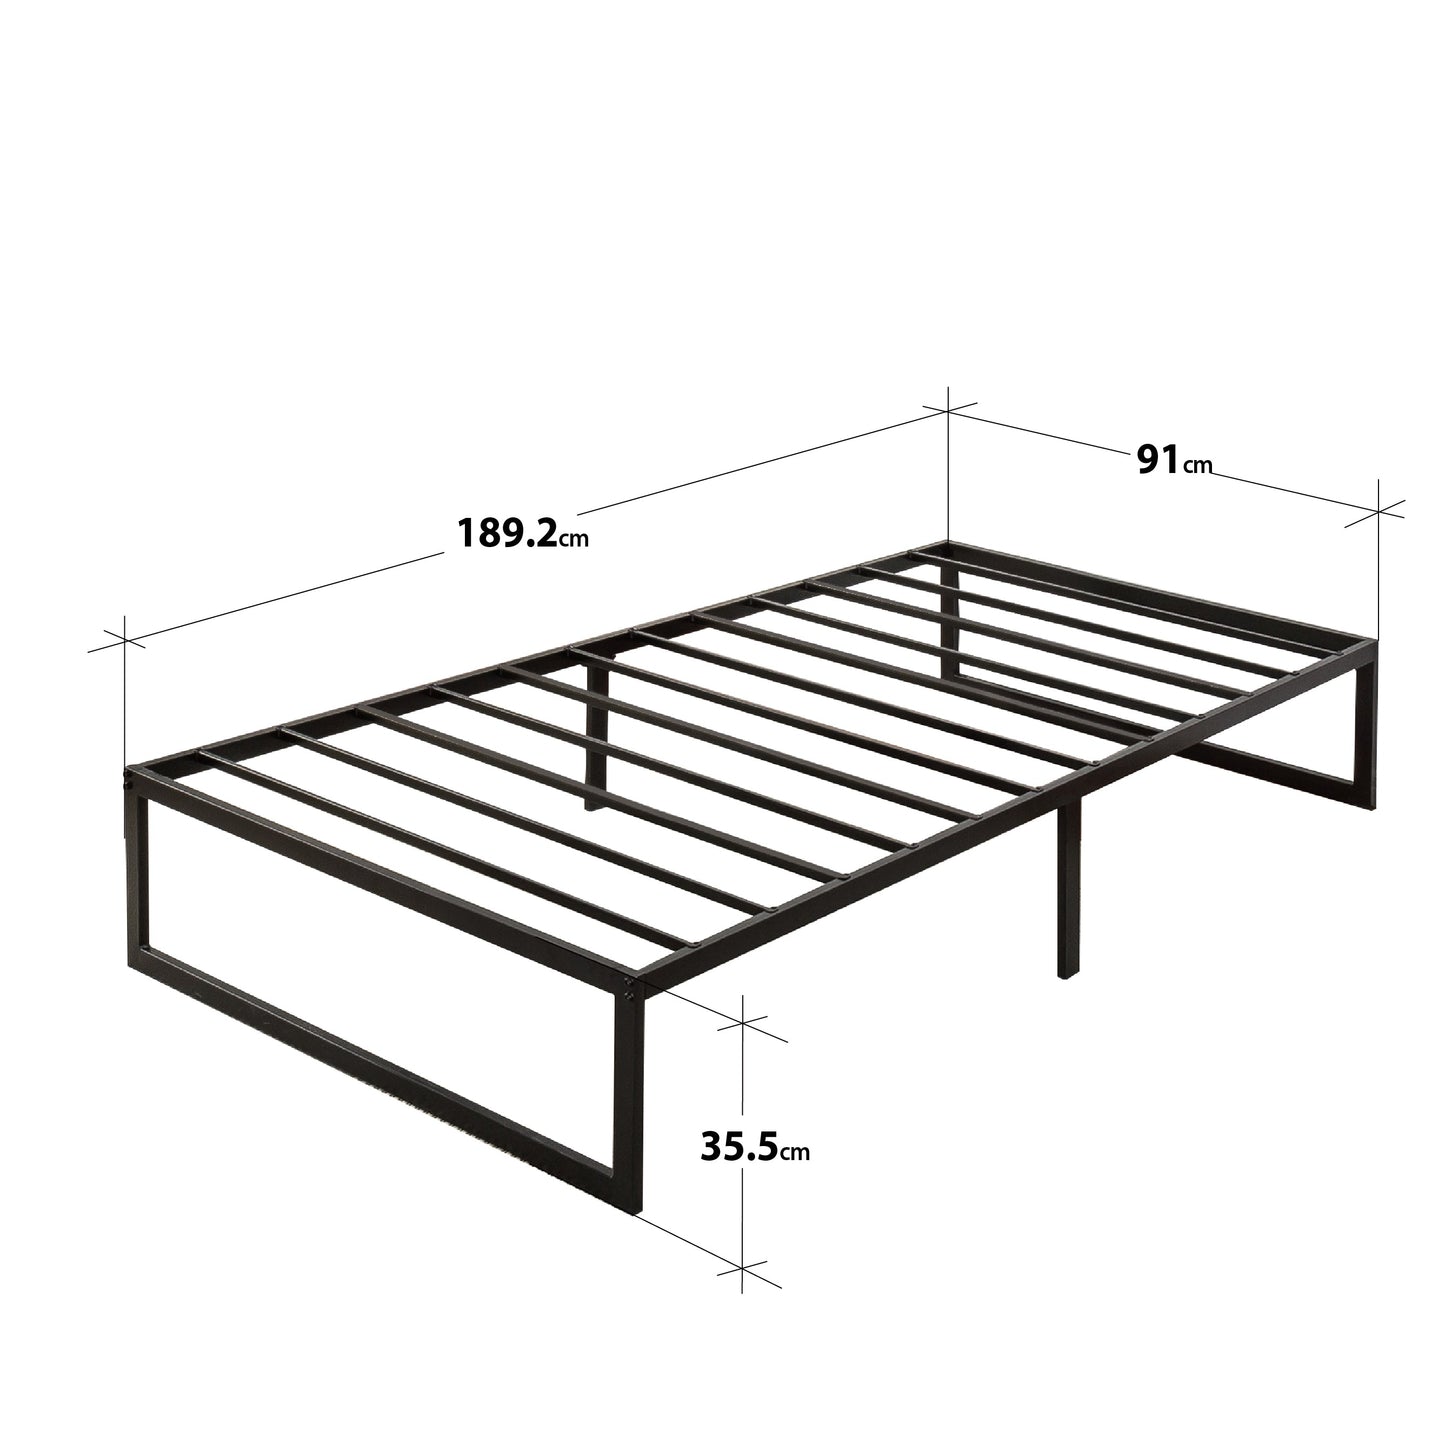 14" Quicklock Smart Platform Bed Frame